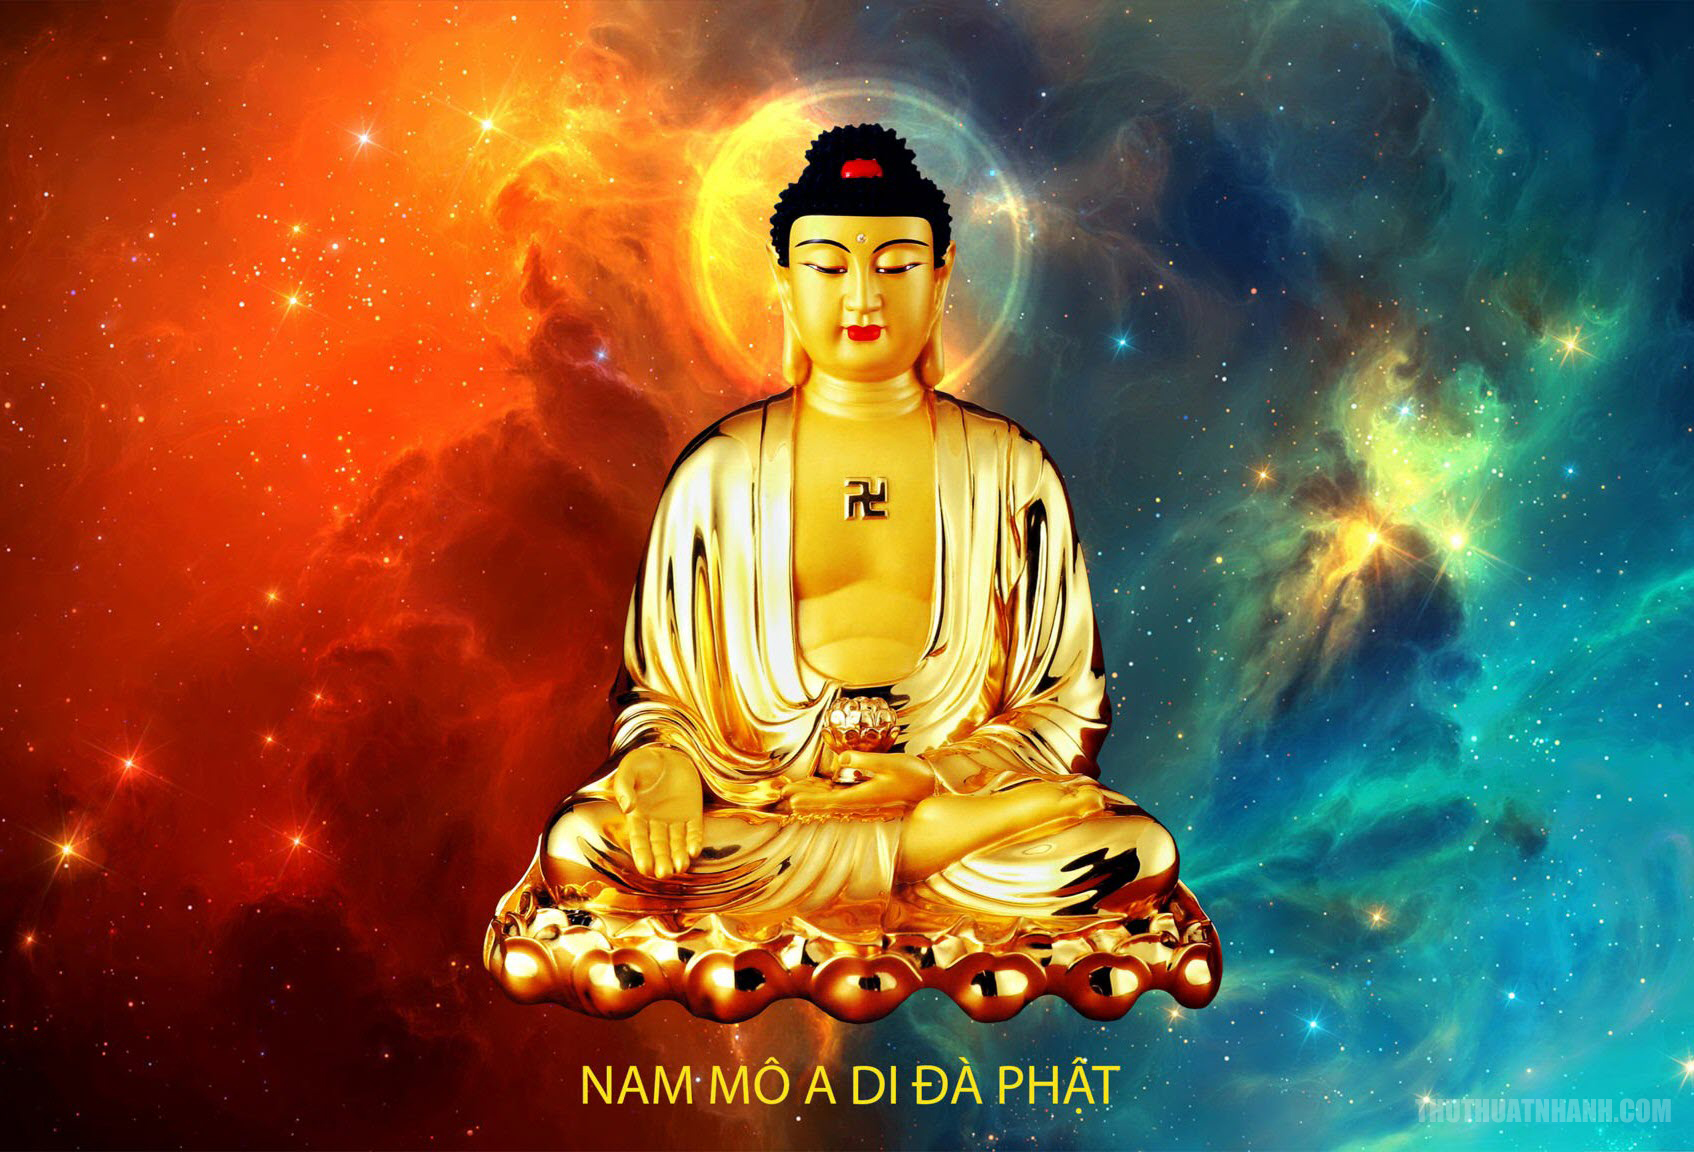 Ảnh Phật đẹp - Bộ sưu tập hình ảnh Phật đẹp nhất - Hình Phật Đẹp nhất | Hình,  Phật, Hình ảnh